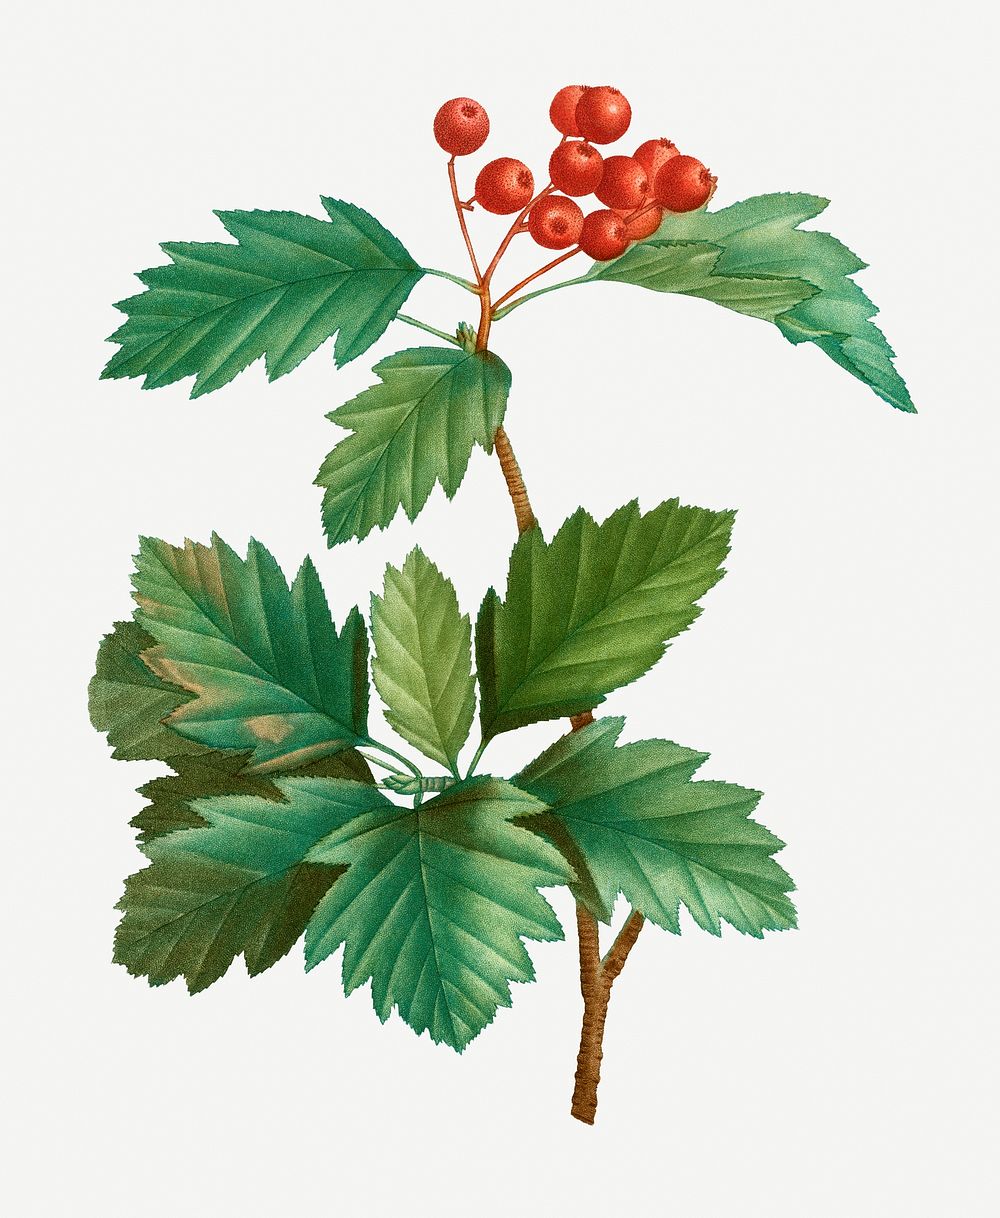 Vintage wild service tree plant illustration